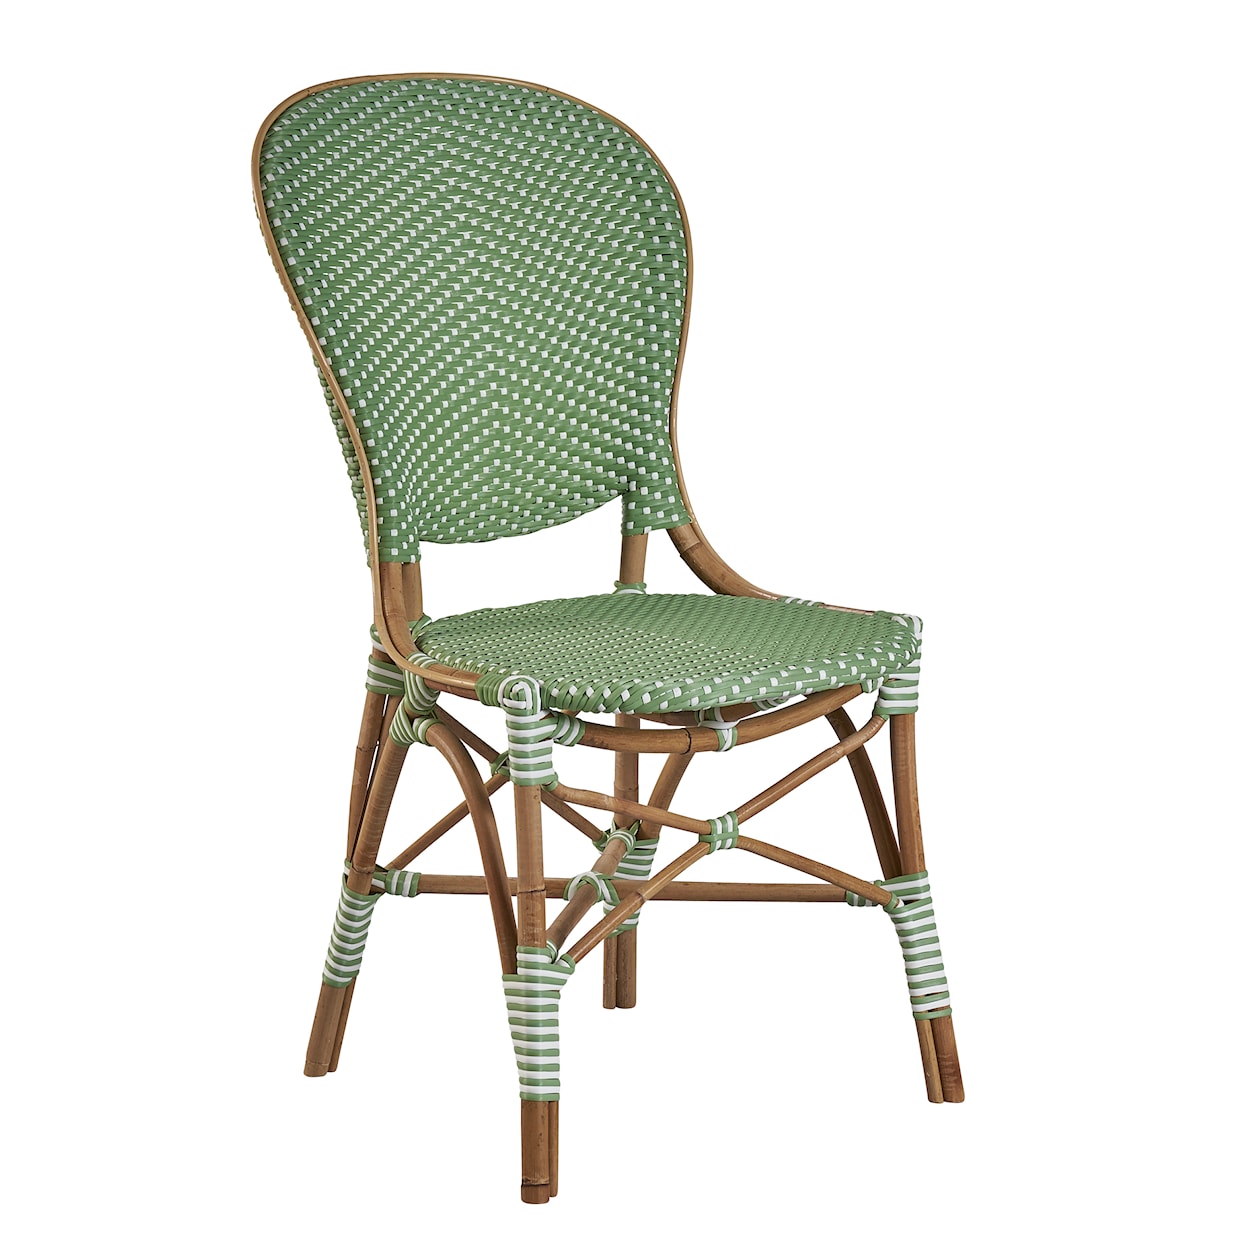 Furniture Classics Furniture Classics Gracie Bistro Chair